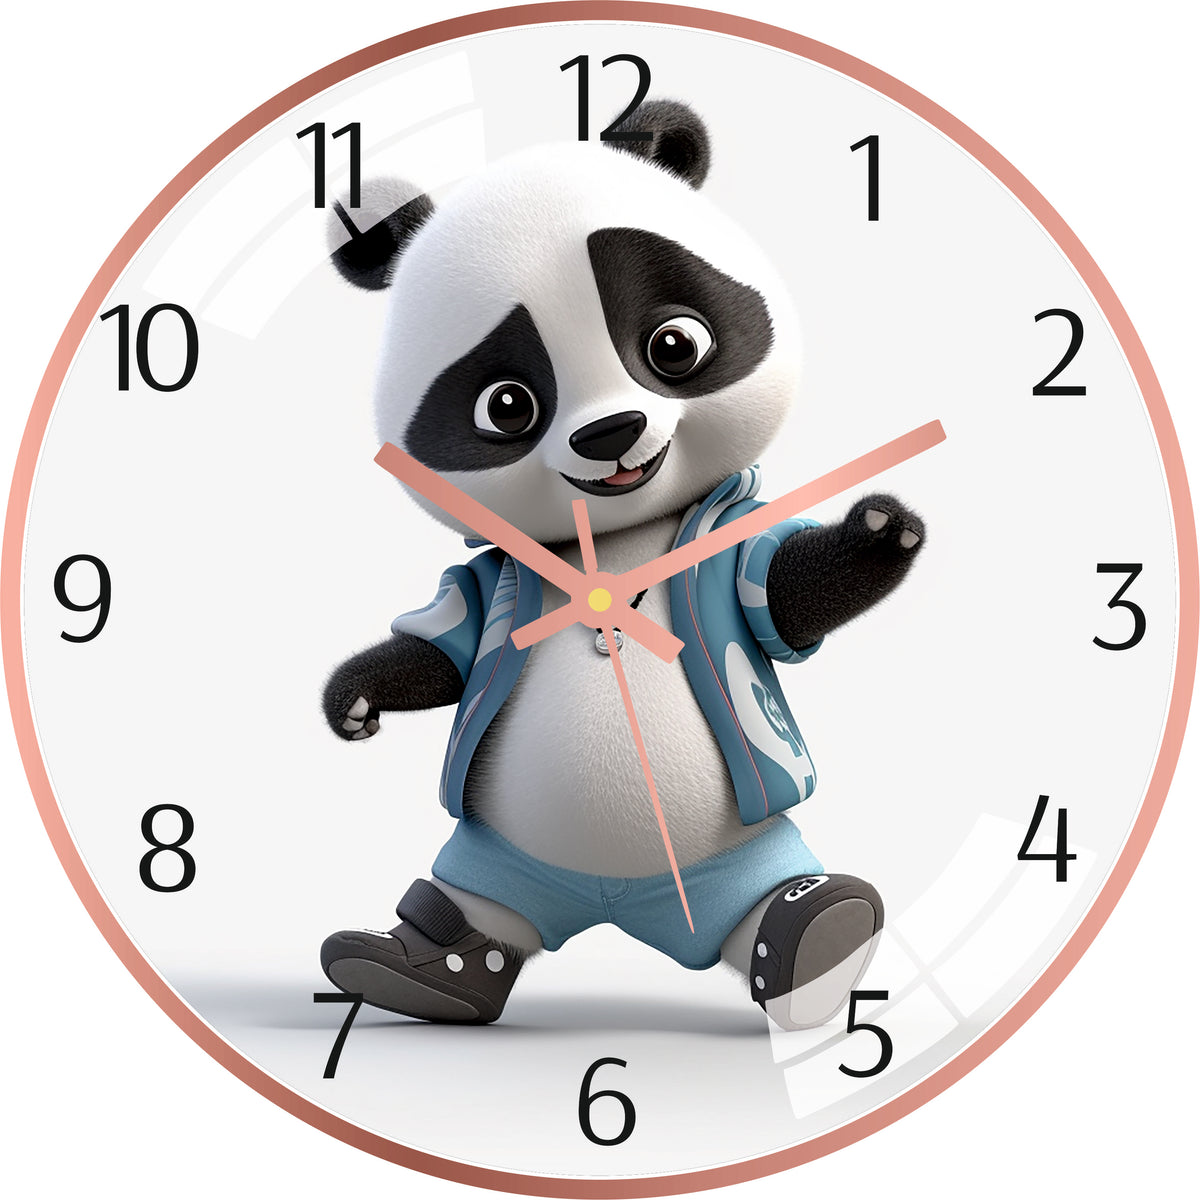 Dancing Panda Wall Clock